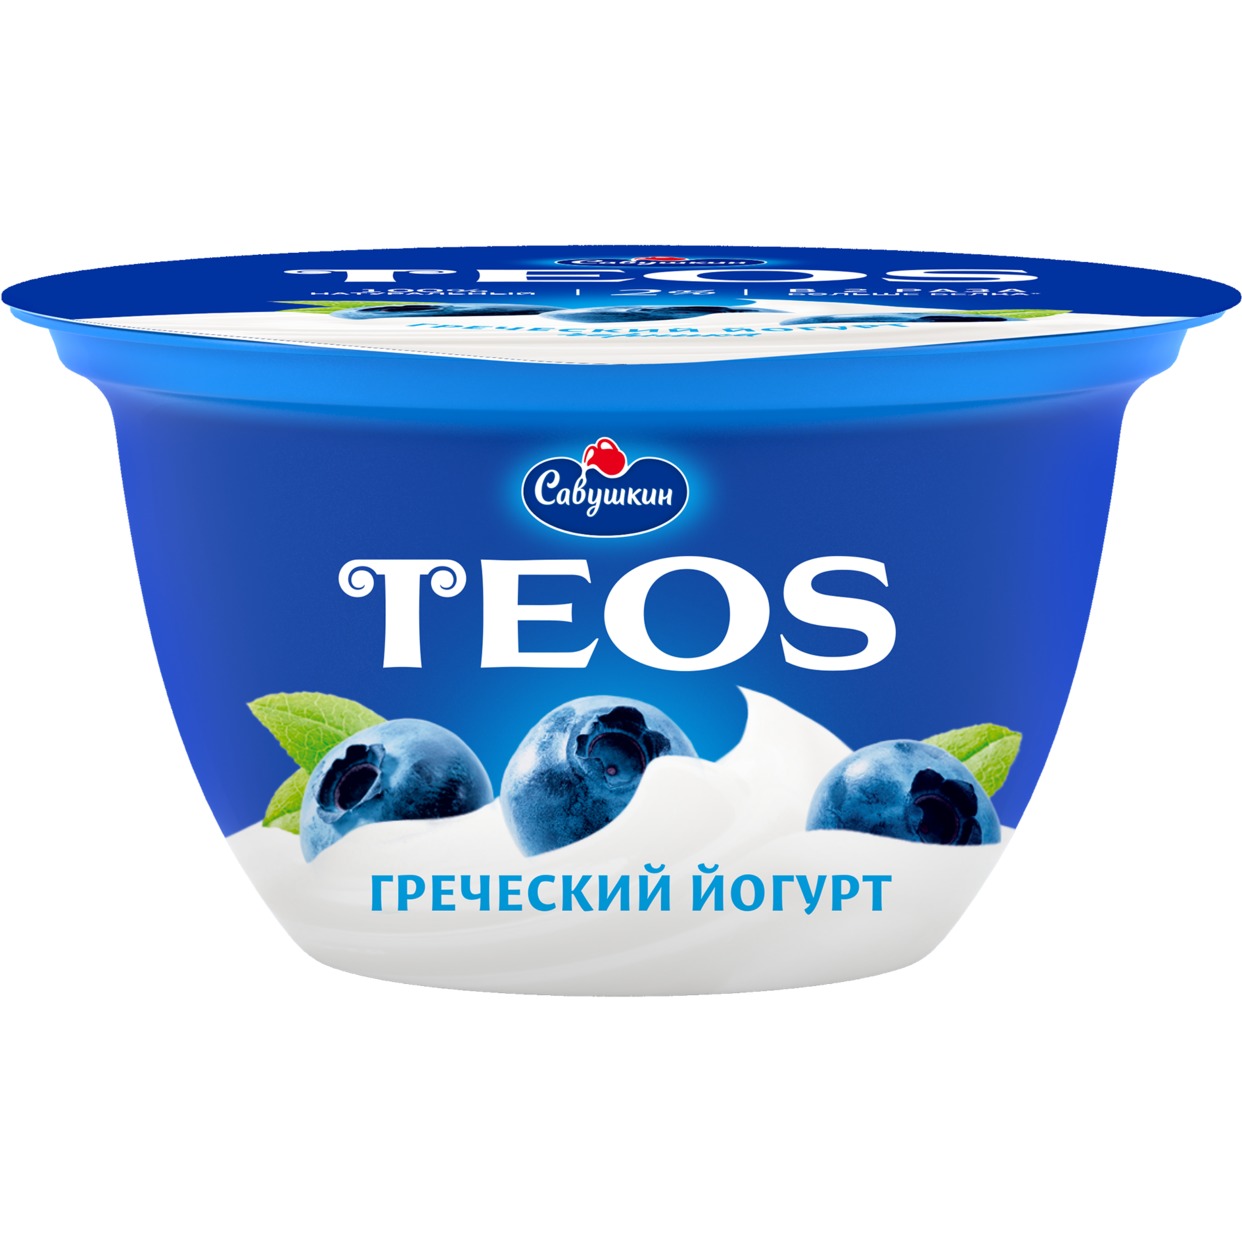 Йогурт "Греческий"массовой долей жира 2,0% с фруктовым наполнителем "черника", 140 гр. по акции в Пятерочке